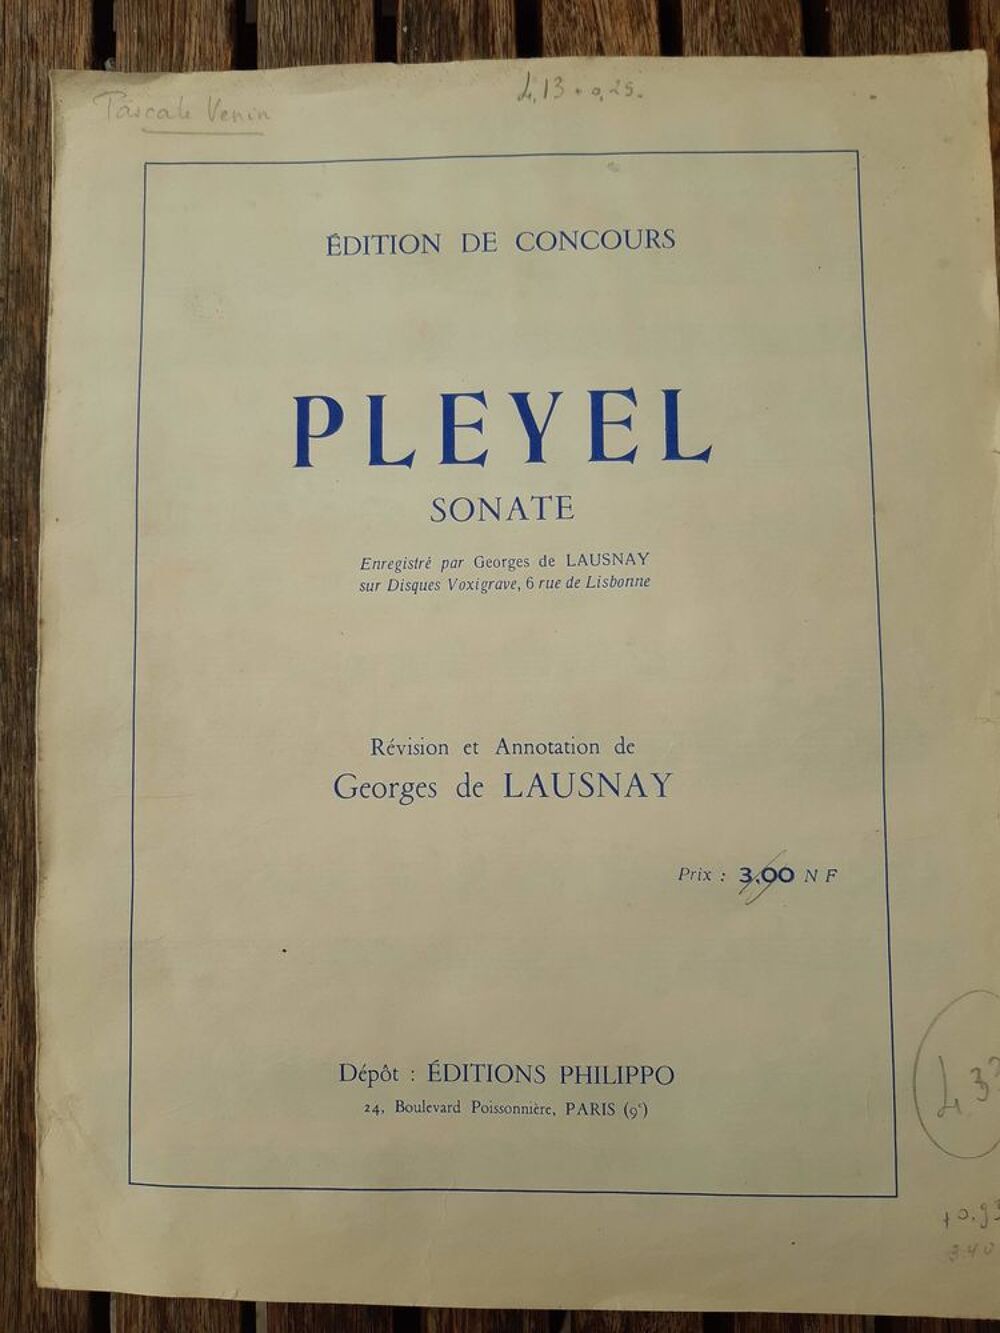 Partition &quot;Sonate&quot; de Pleyel pour piano Livres et BD